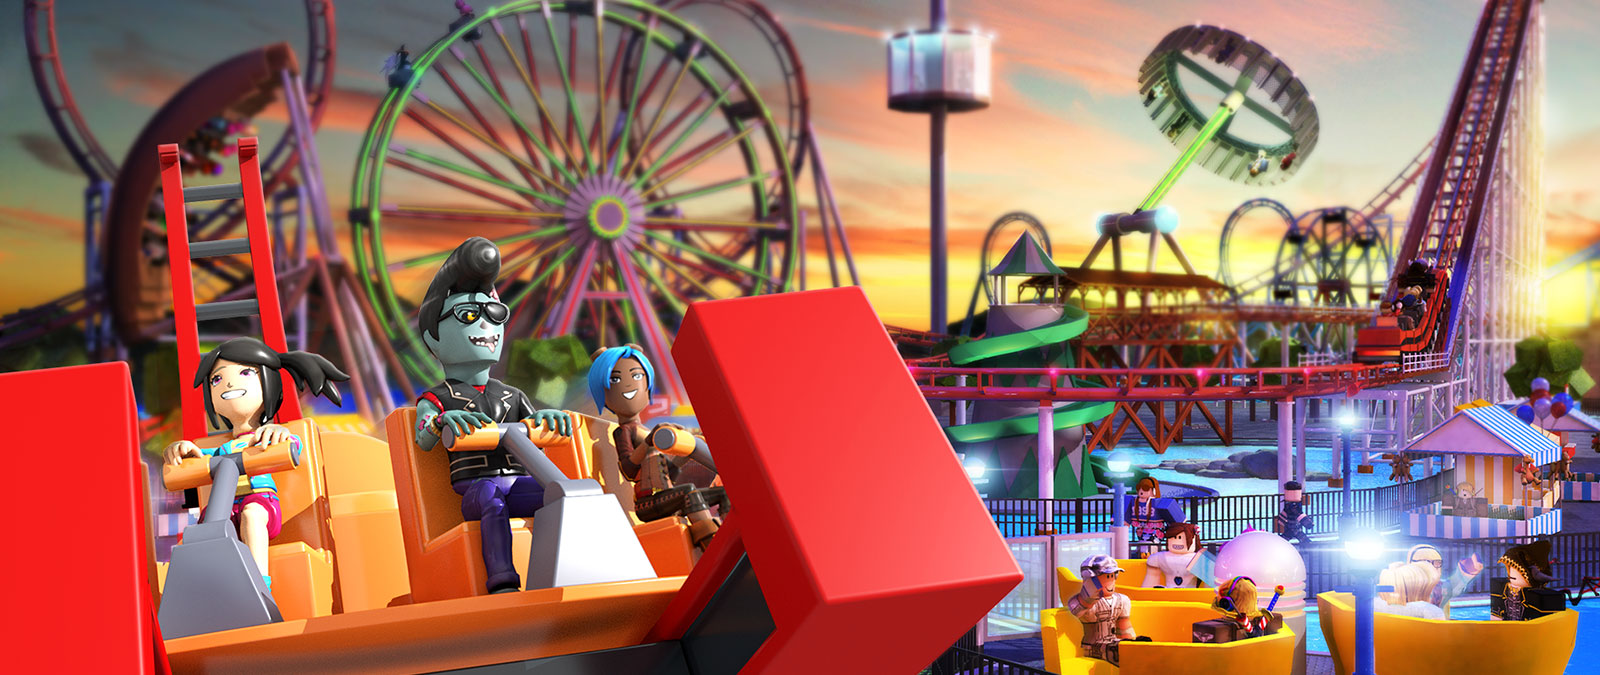 Roblox-hahmot huvipuistolaitteessa, taustalla vuoristorata ja maailmanpyörä Theme Park Tycoonissa